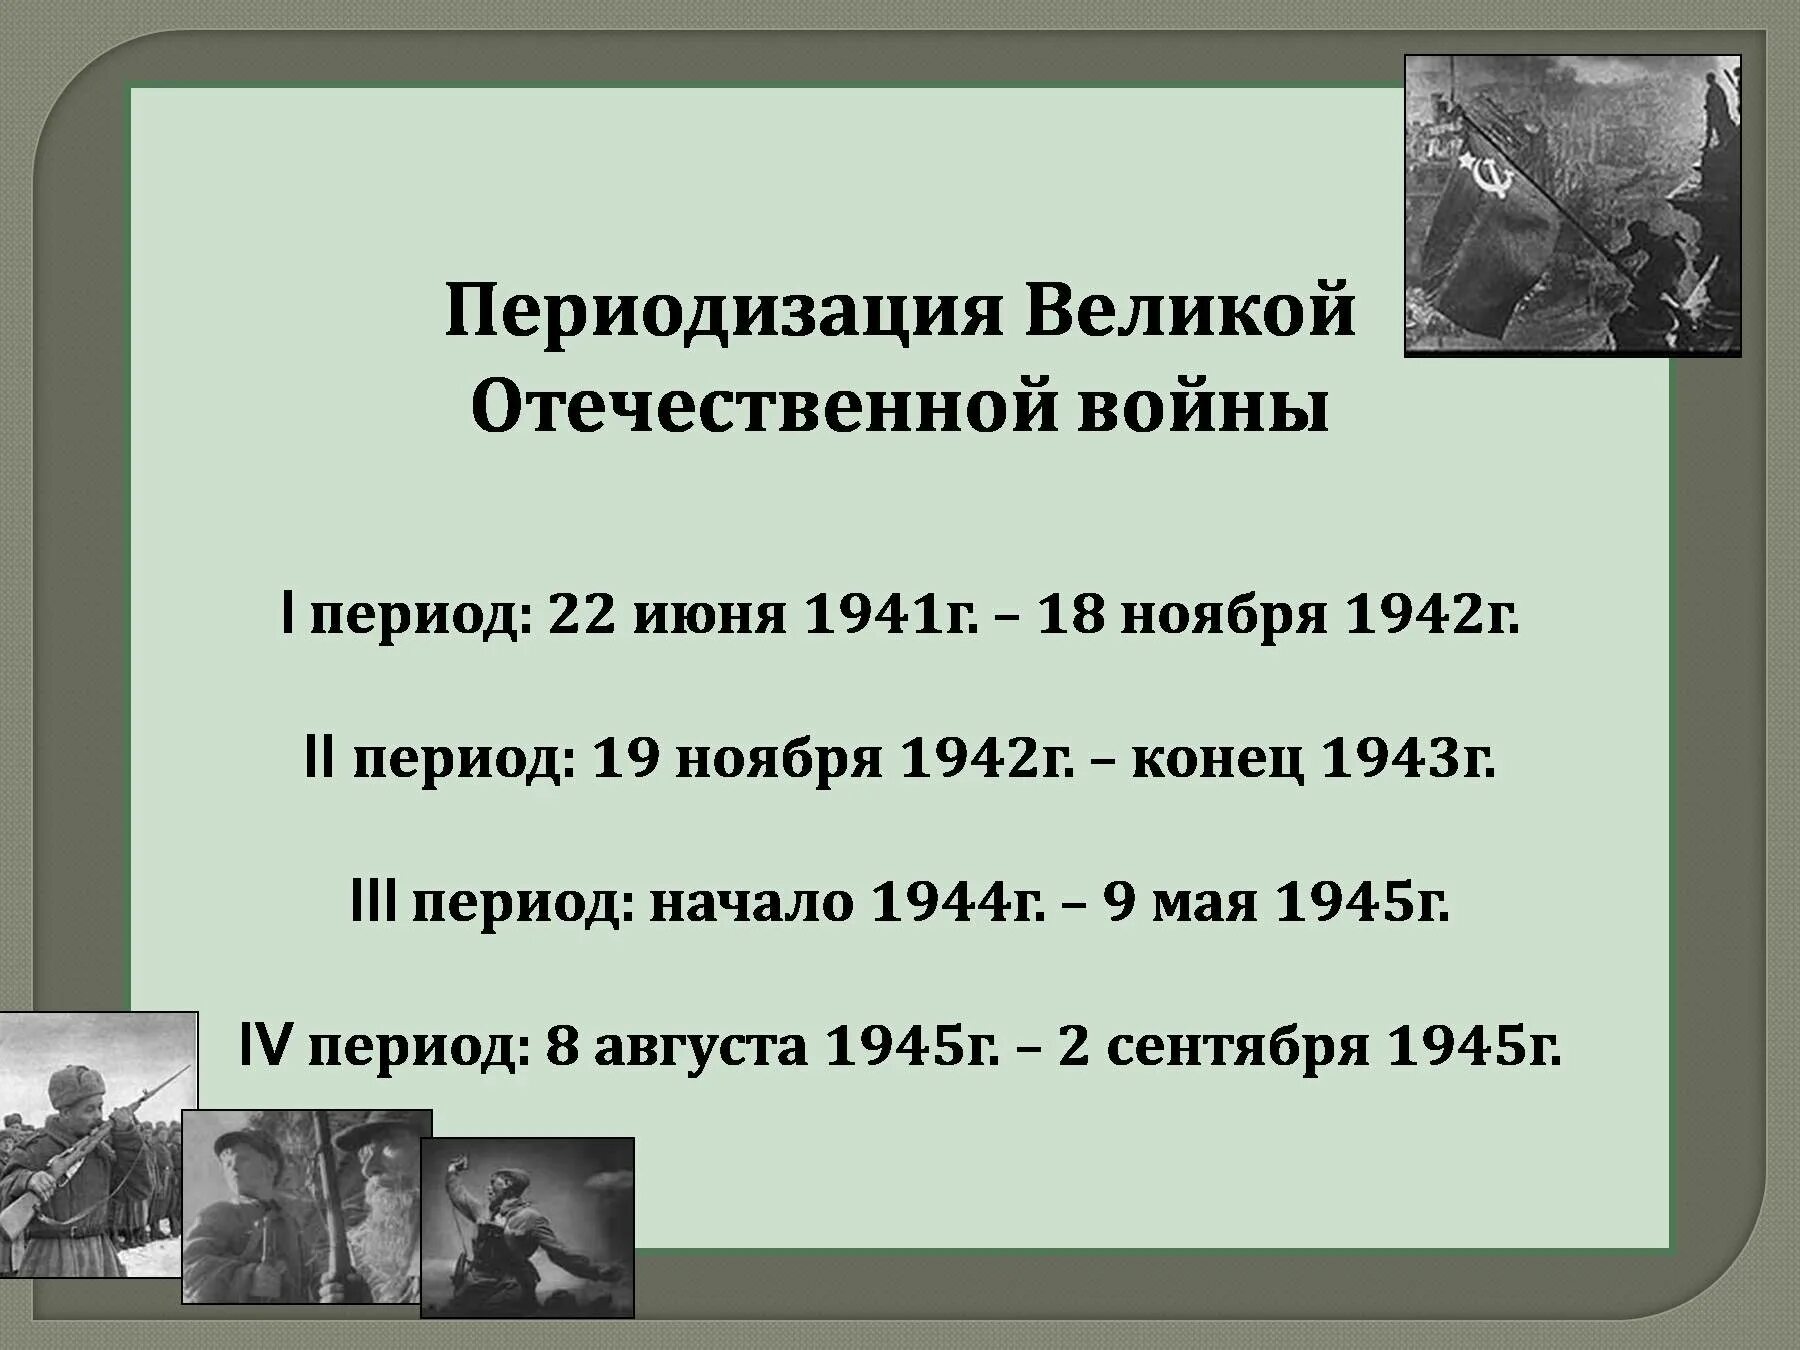 Этапы вов 1941 1945. Периодизация Великой Отечественной войны 3 периода. Третий период Великой Отечественной войны 1941-1942. ВОВ второй период 19 ноября 1942 конец 1943.